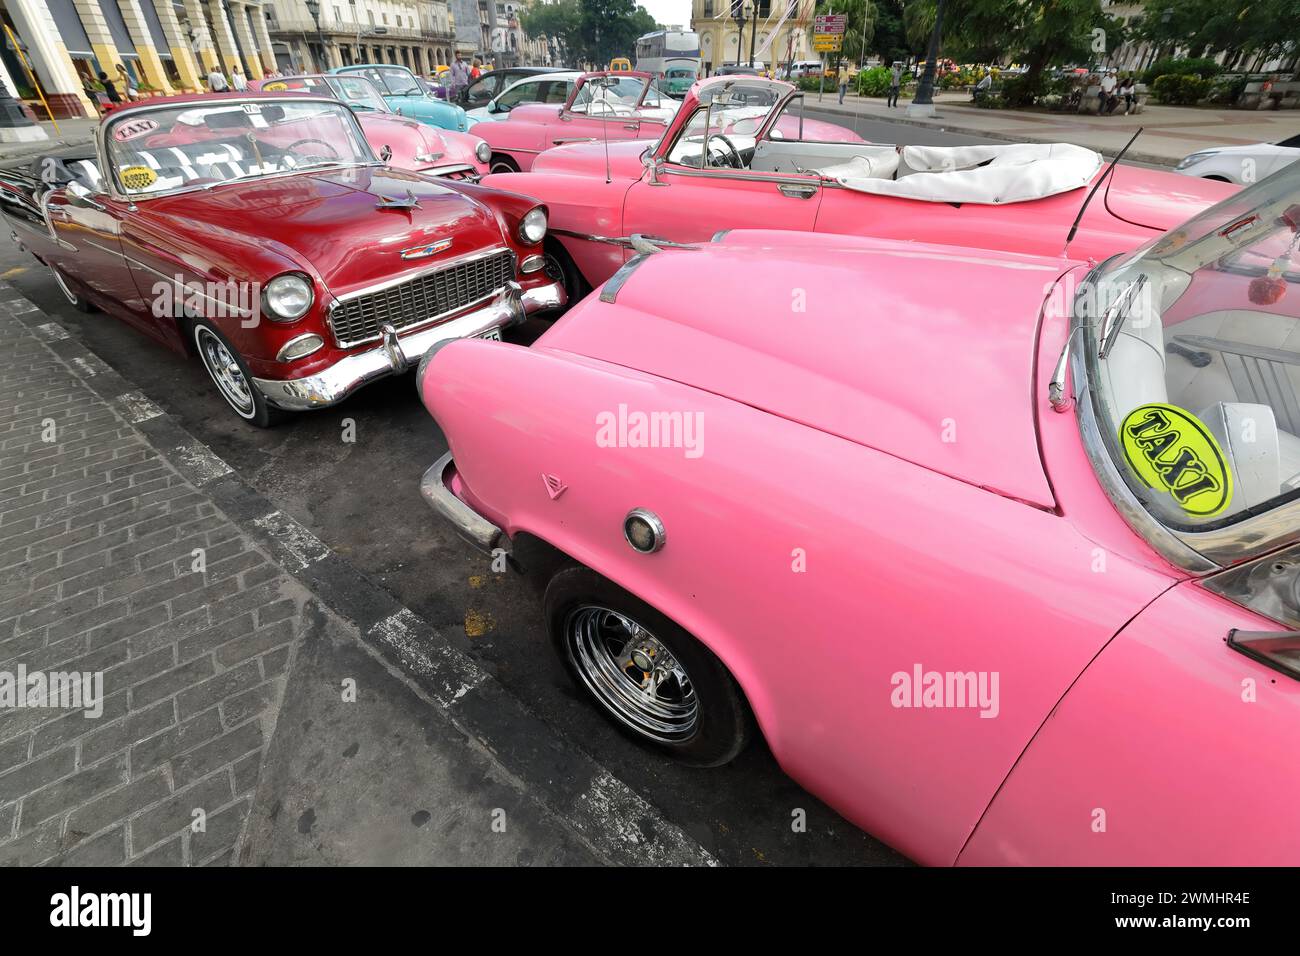 019 Mess alte rosa und rote amerikanische Oldtimer - Almendron, Yank Tank Mercury-Chevrolet - von 1952-53-55, geparkt auf dem Paseo del Prado. Havanna-Kuba. Stockfoto